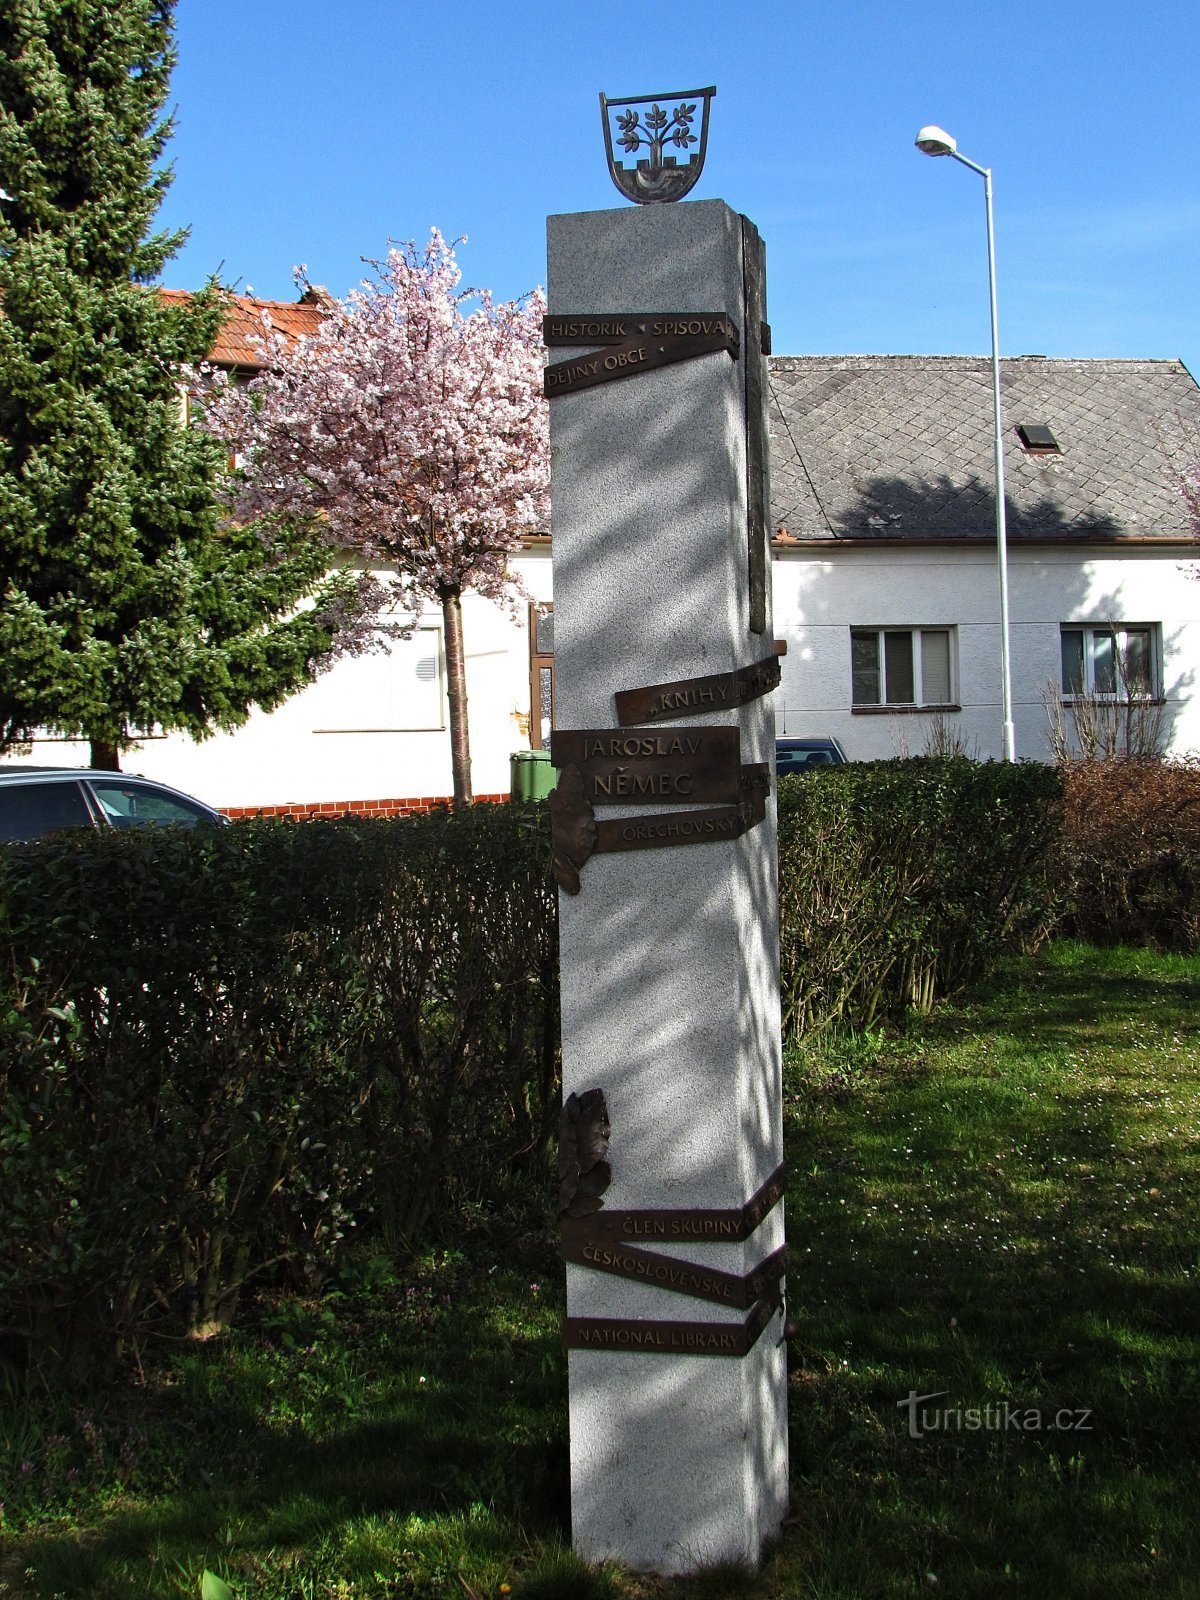 Ořechov - monument to Jaroslav Němek